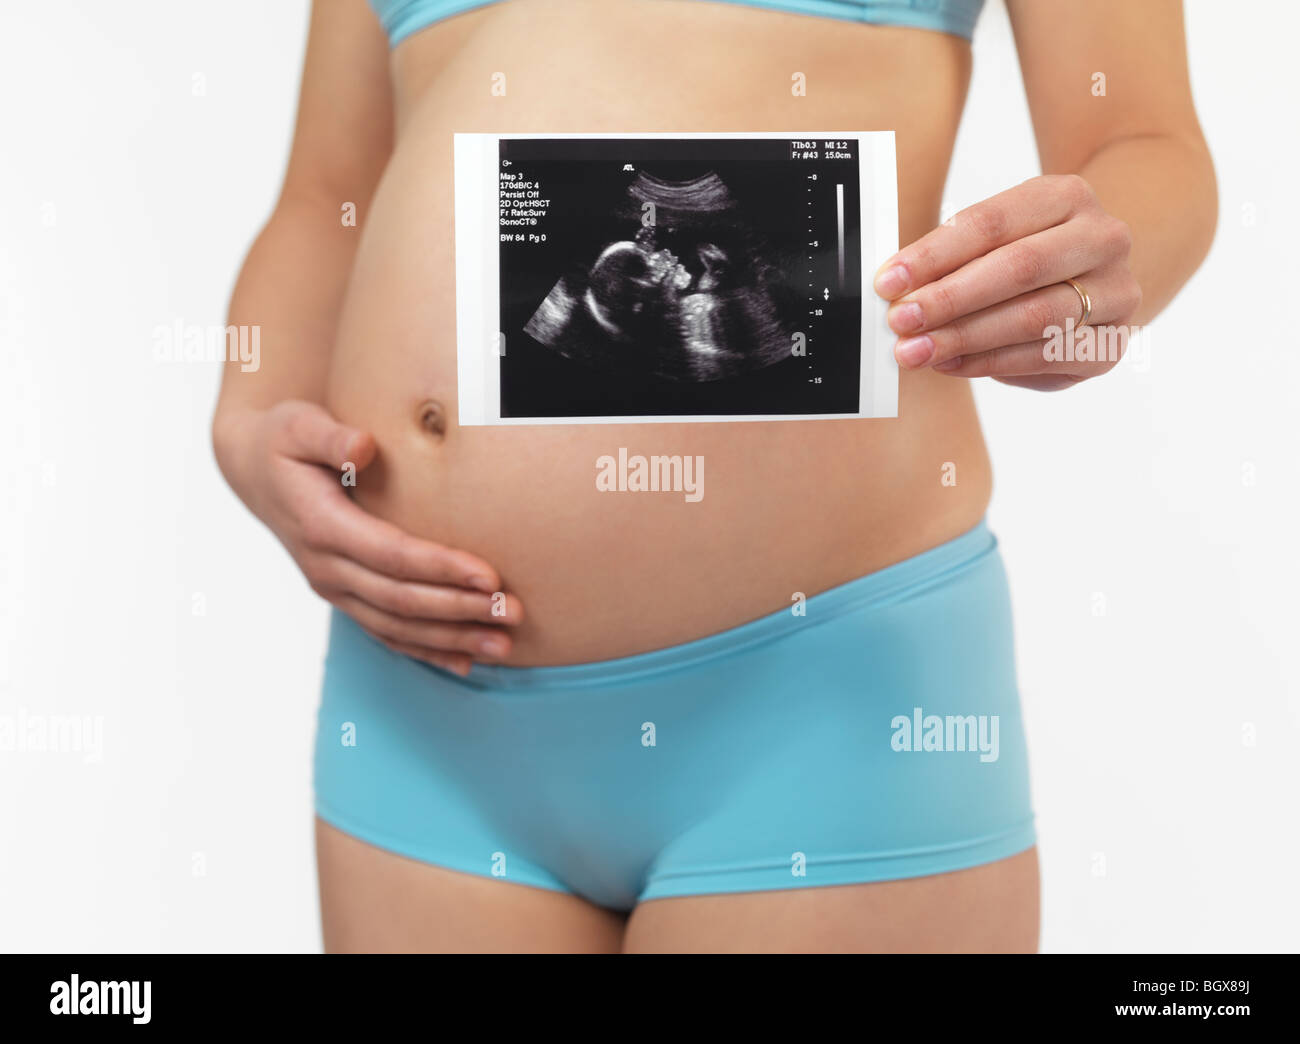 Schwangere Frau mit Ultraschall-Bildgebung Bild ihres Babys. Fünf Monate alten Fötus. Isoliert auf weißem Hintergrund. Stockfoto